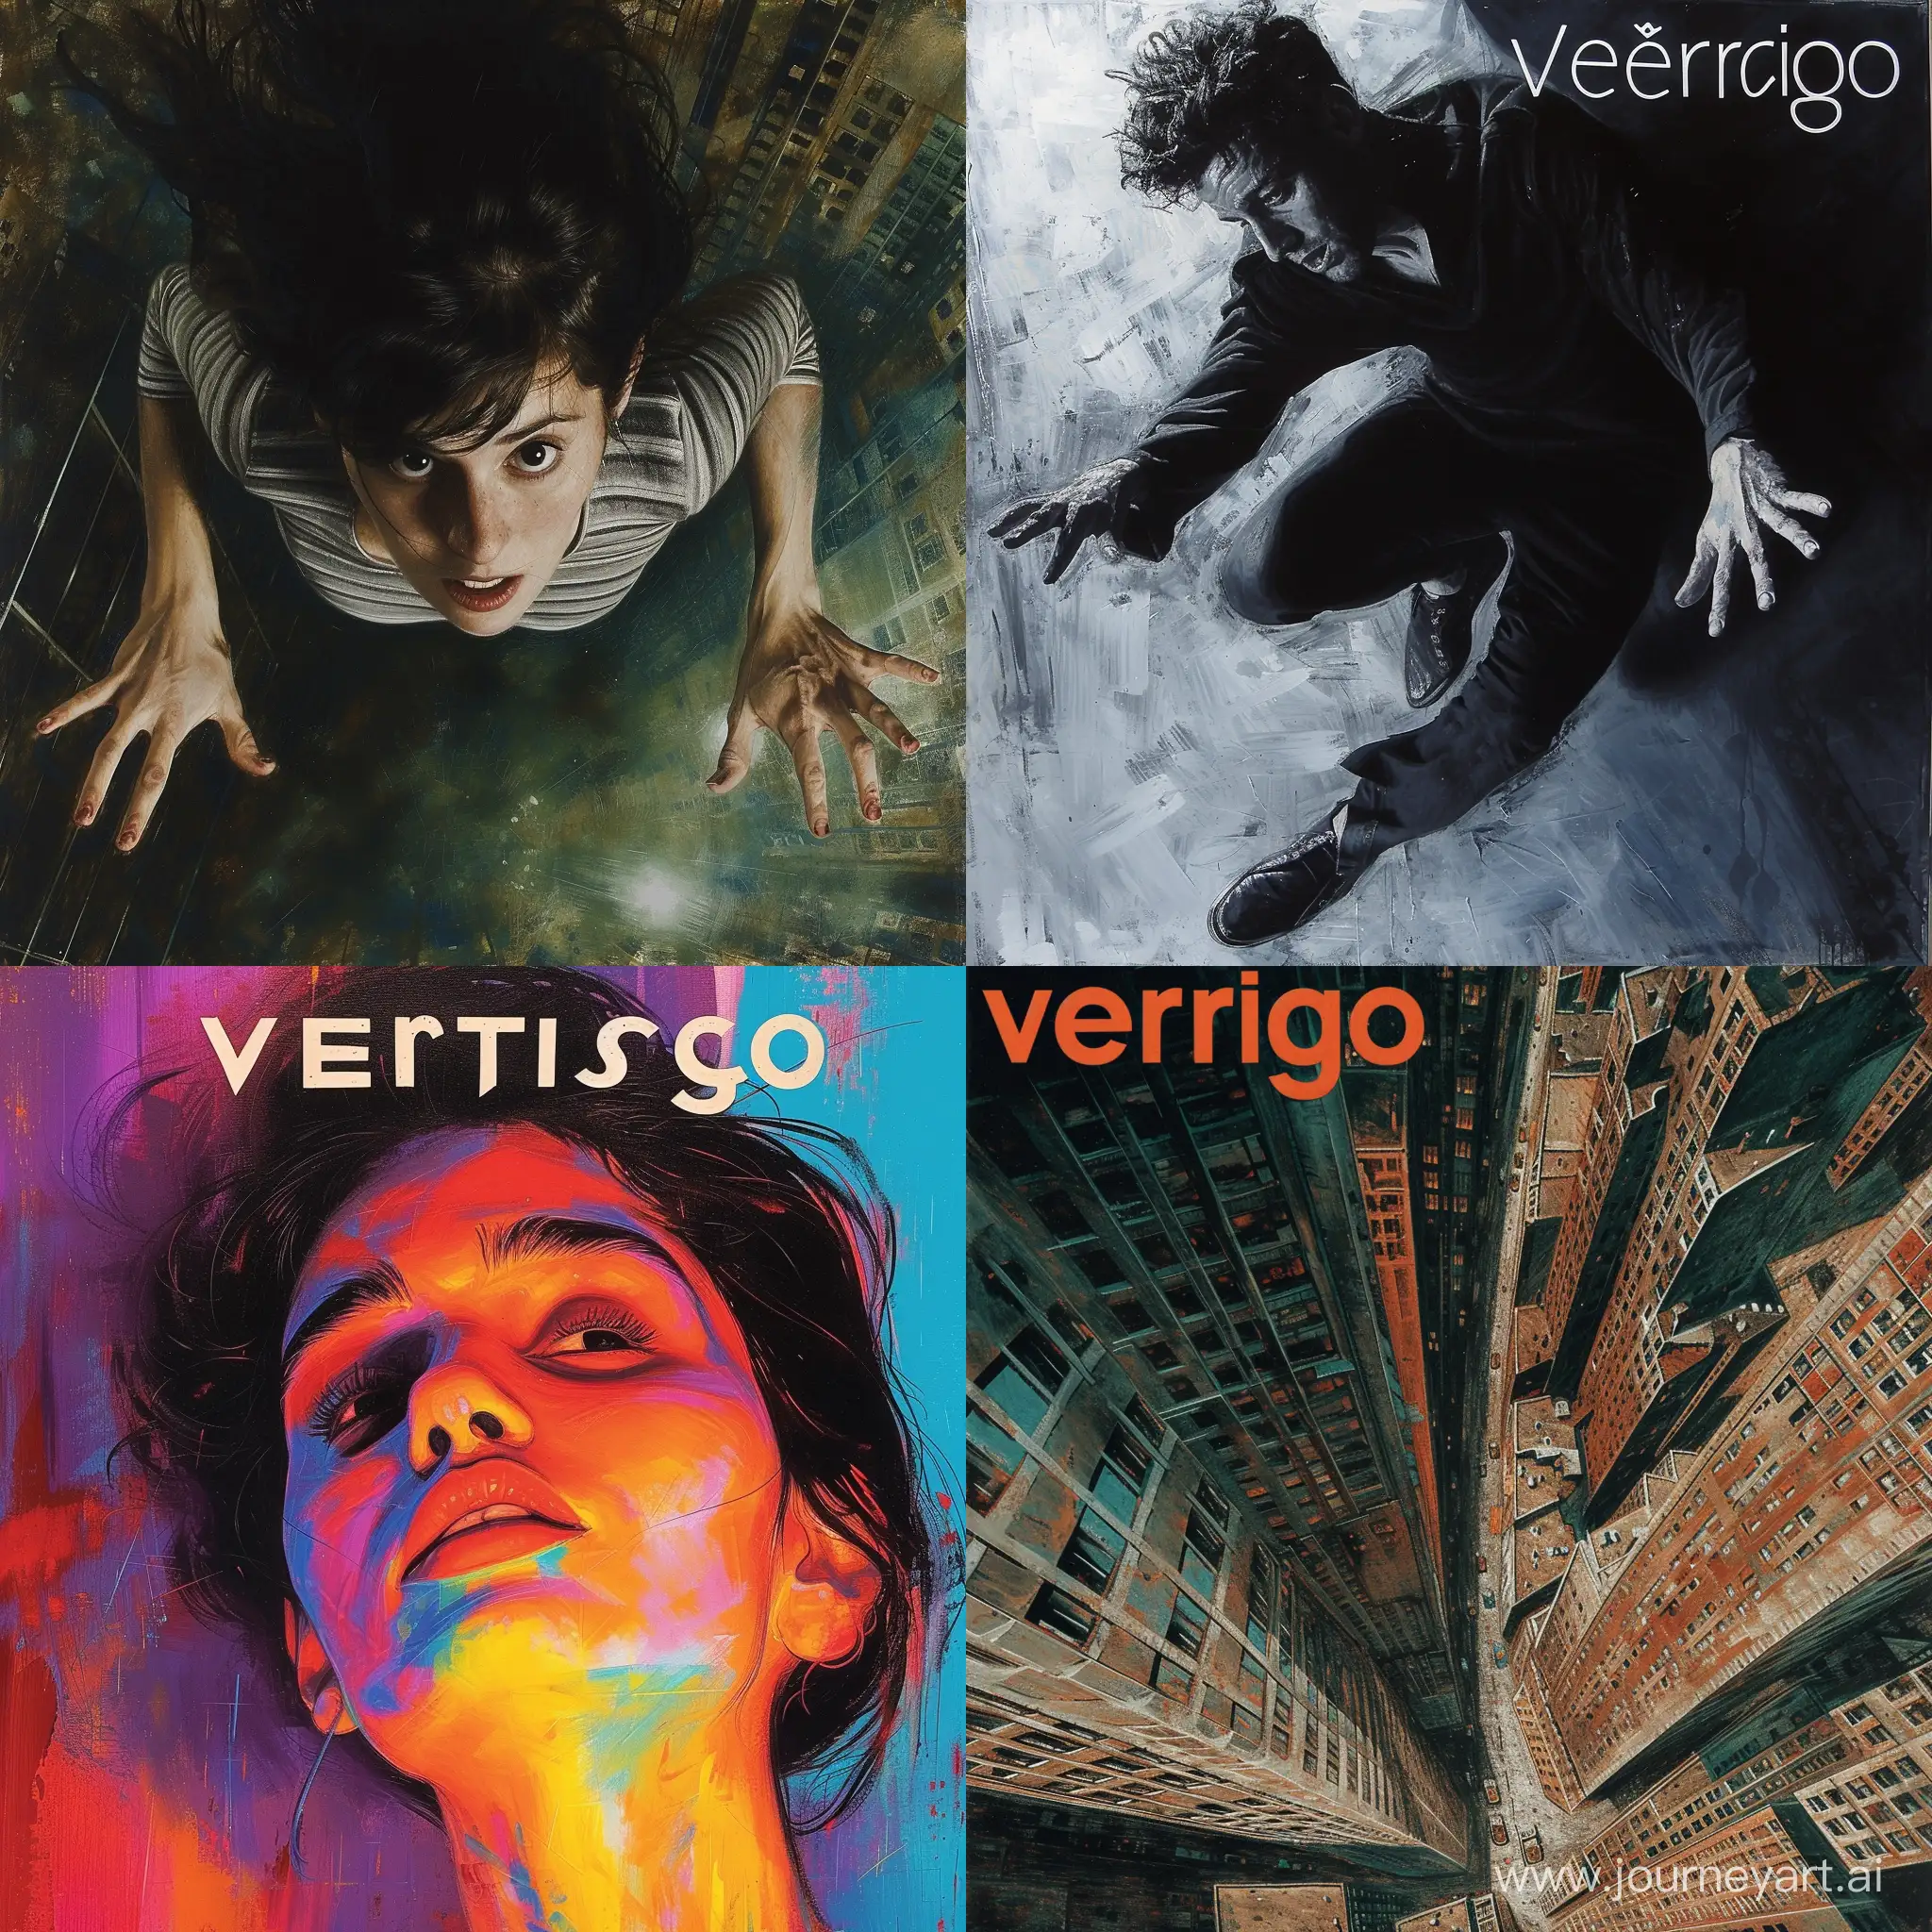 The word vertigo in Farsi is similar to vertigo